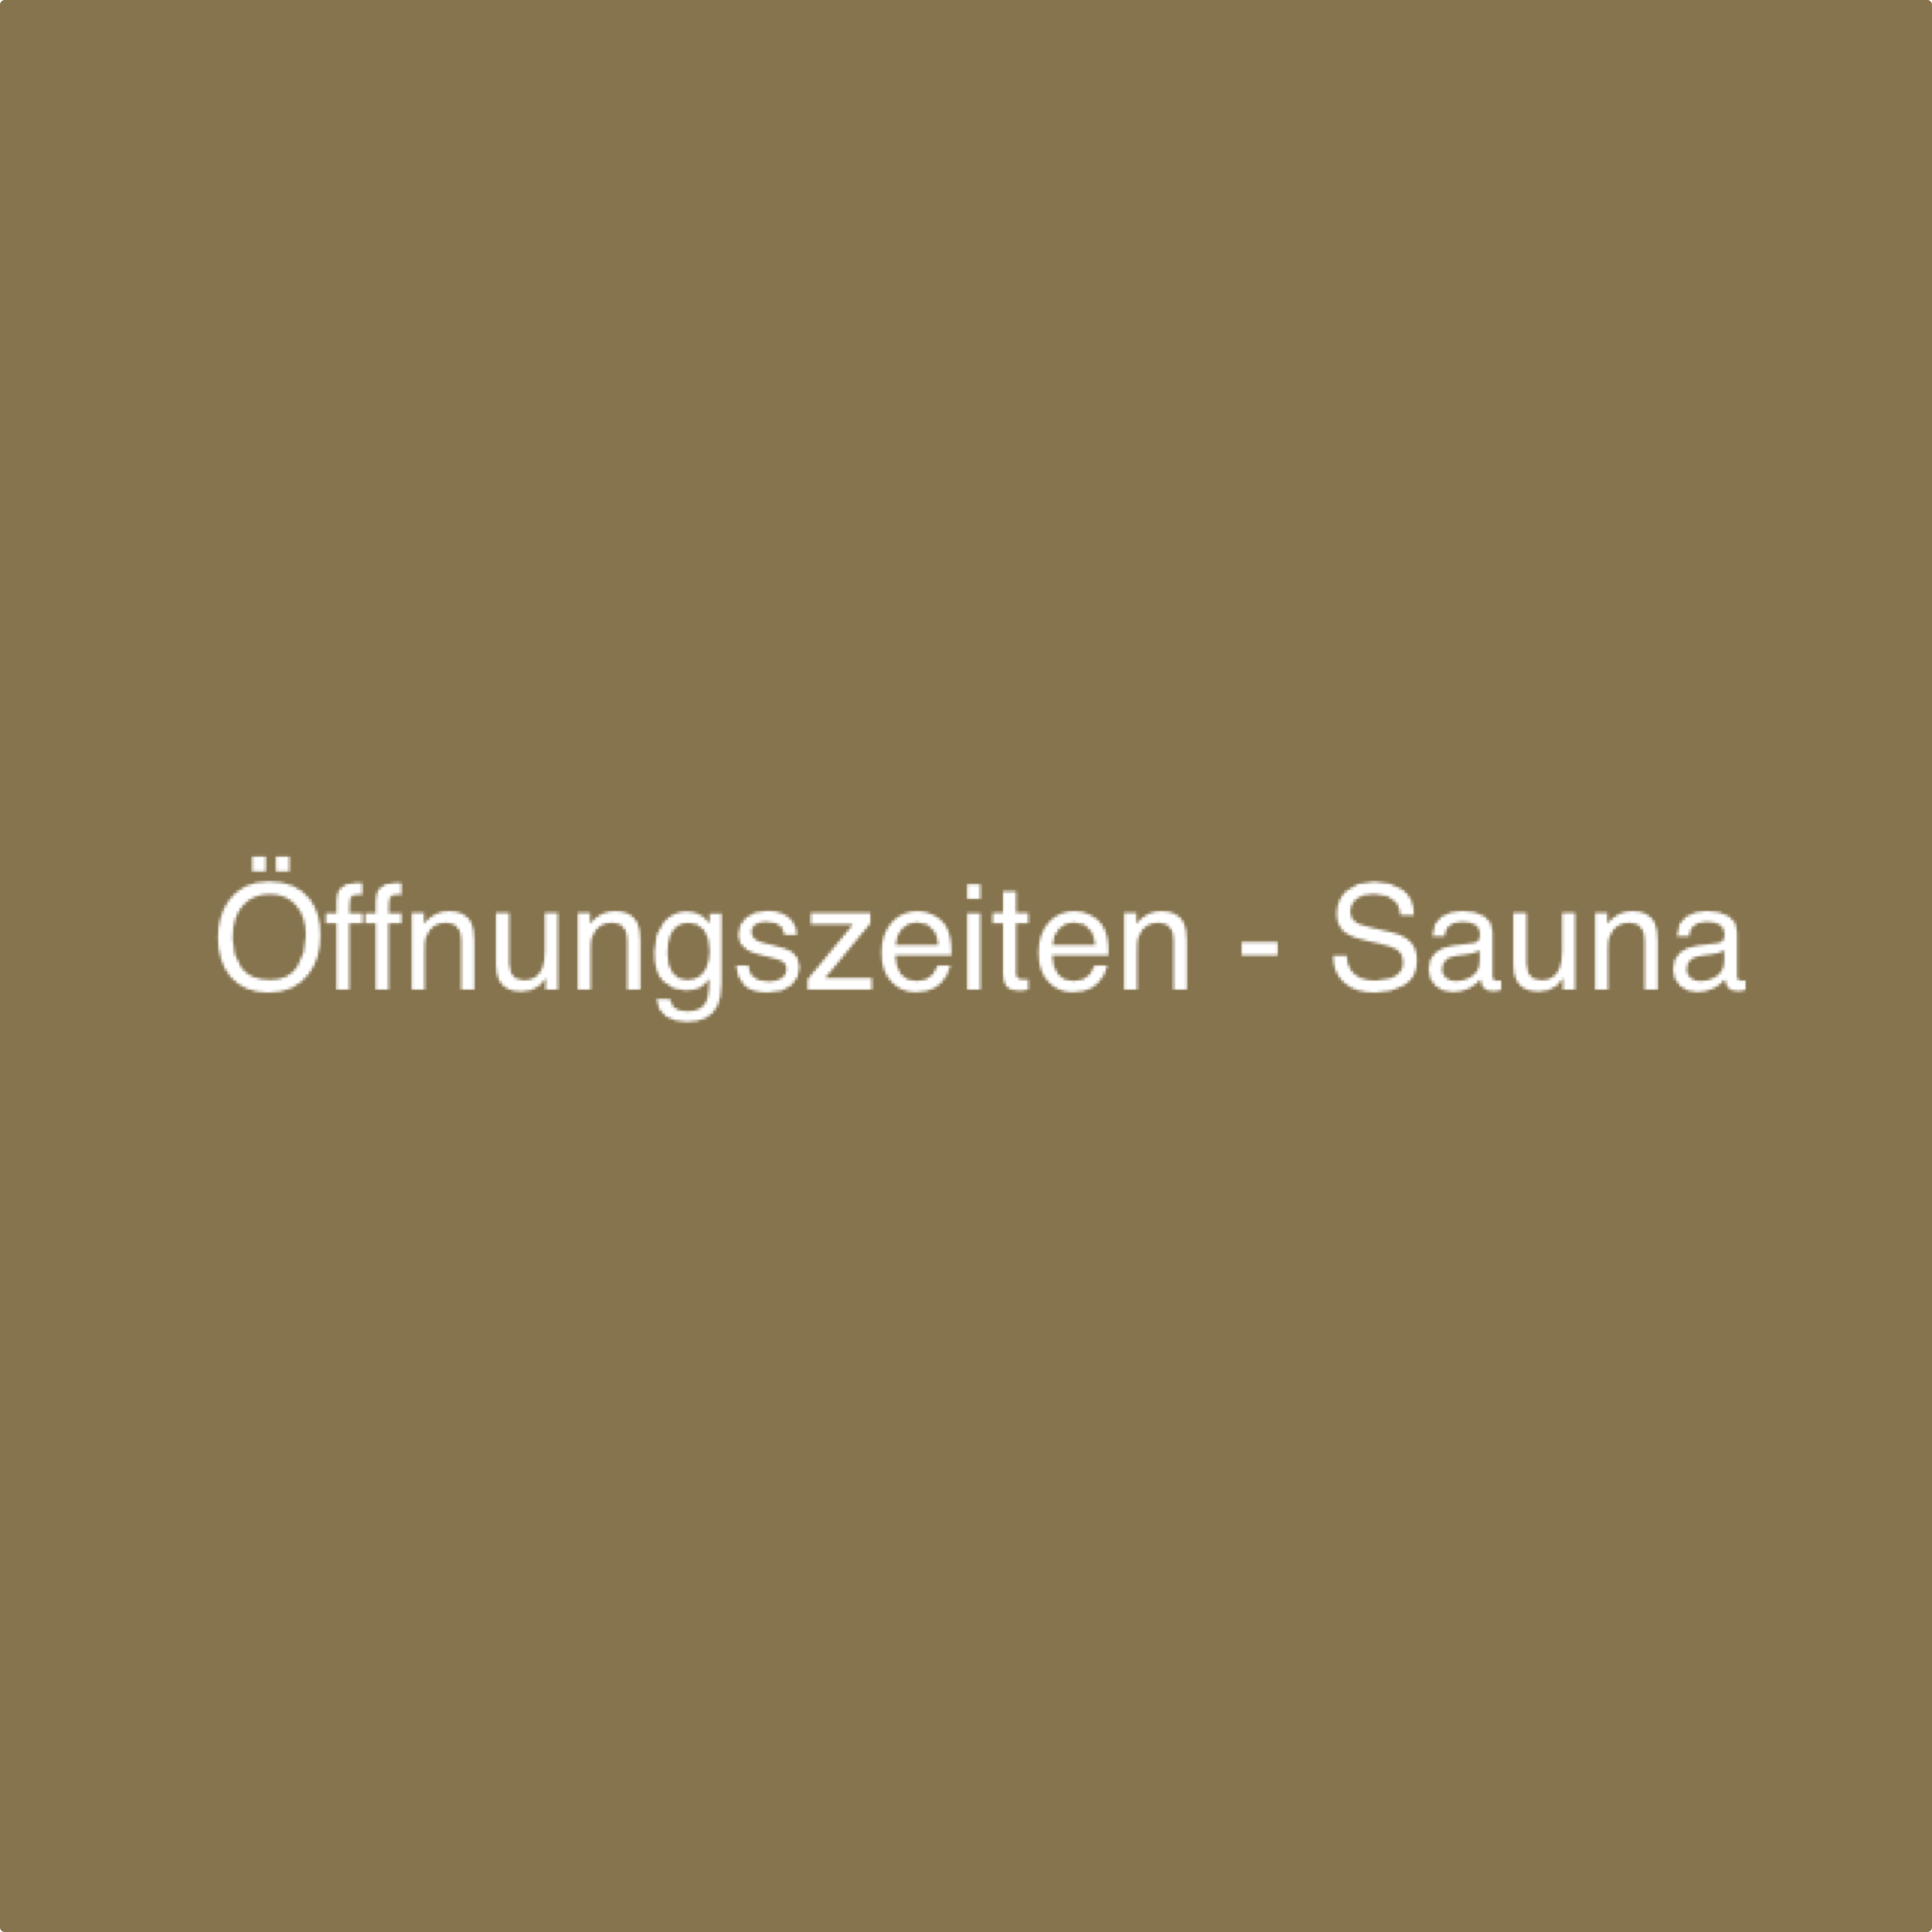 Öffnungszeiten - Sauna